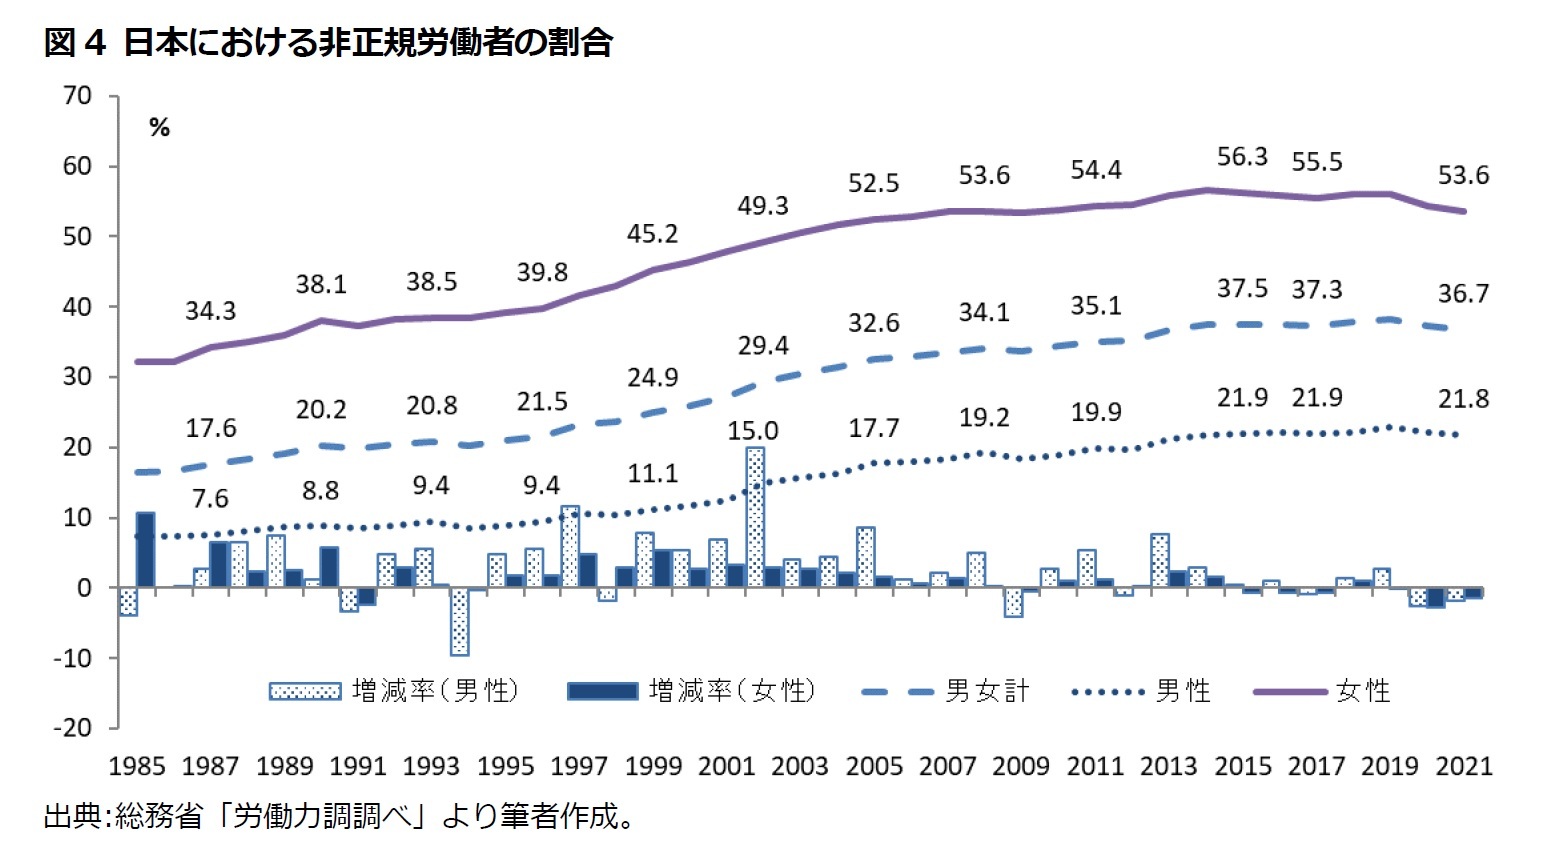 図4 日本における非正規労働者の割合